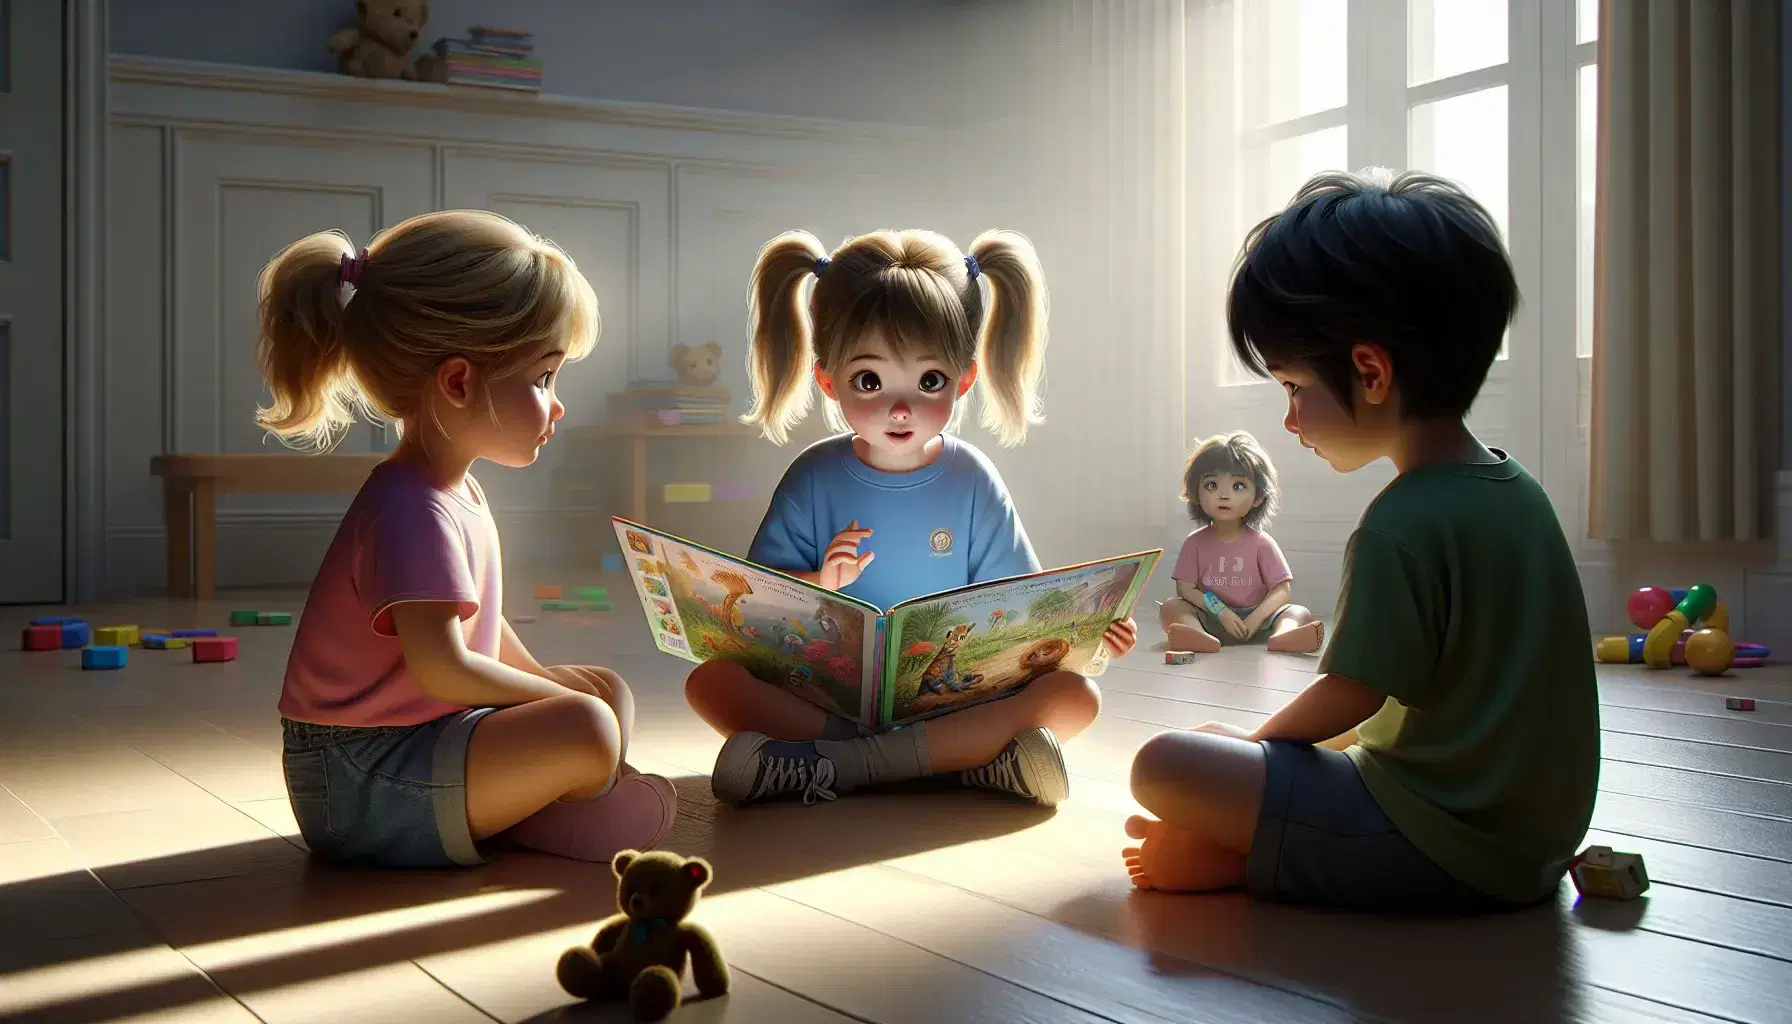 Niños sentados en el suelo mirando un libro ilustrado, con juguetes dispersos alrededor y luz natural entrando por la ventana.